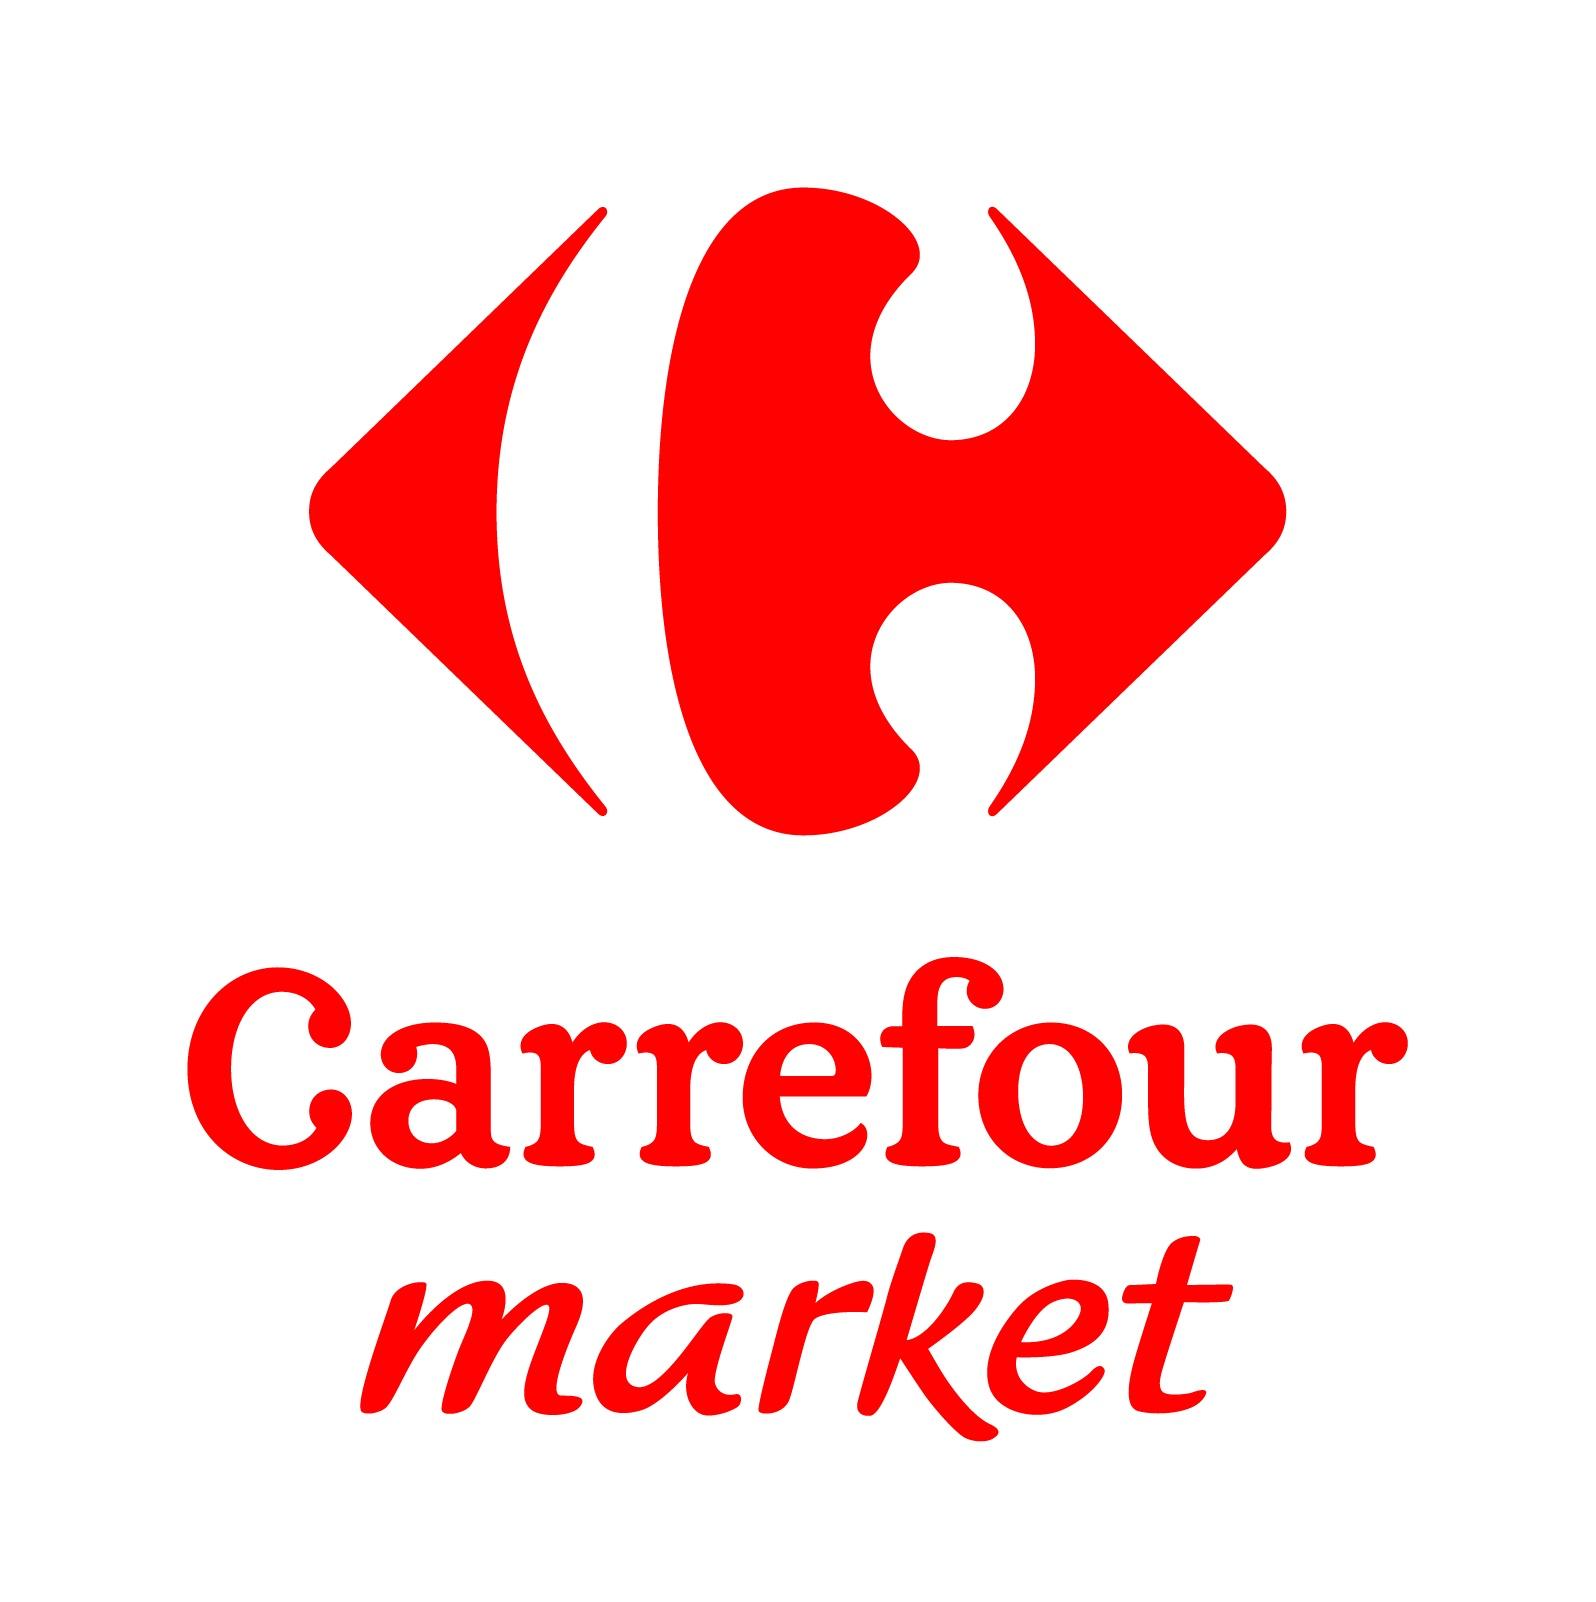 Carrefour Roost Warendin